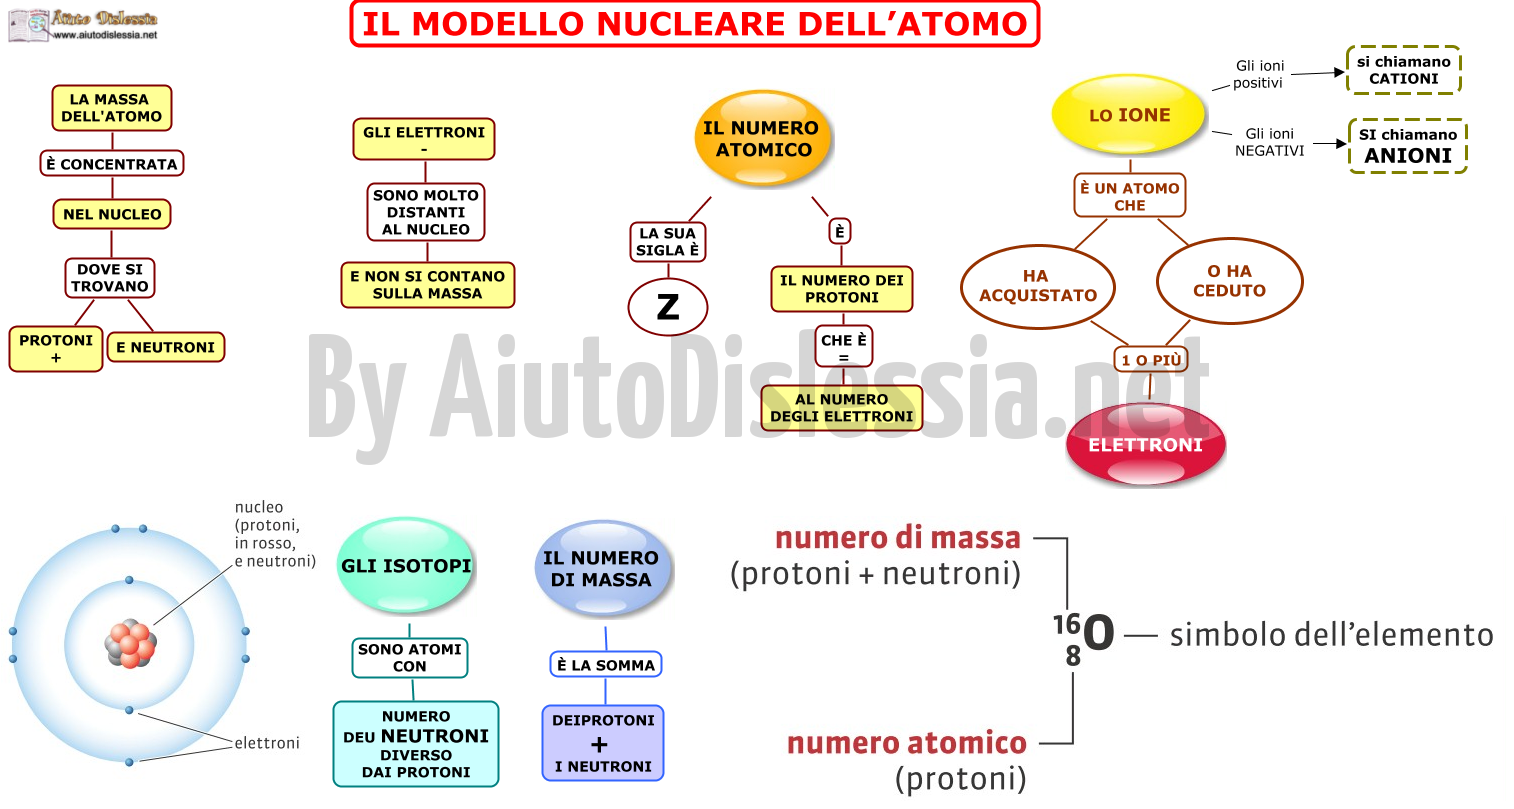 12.-MODELLO-NUCLEARE-DELLATOMO